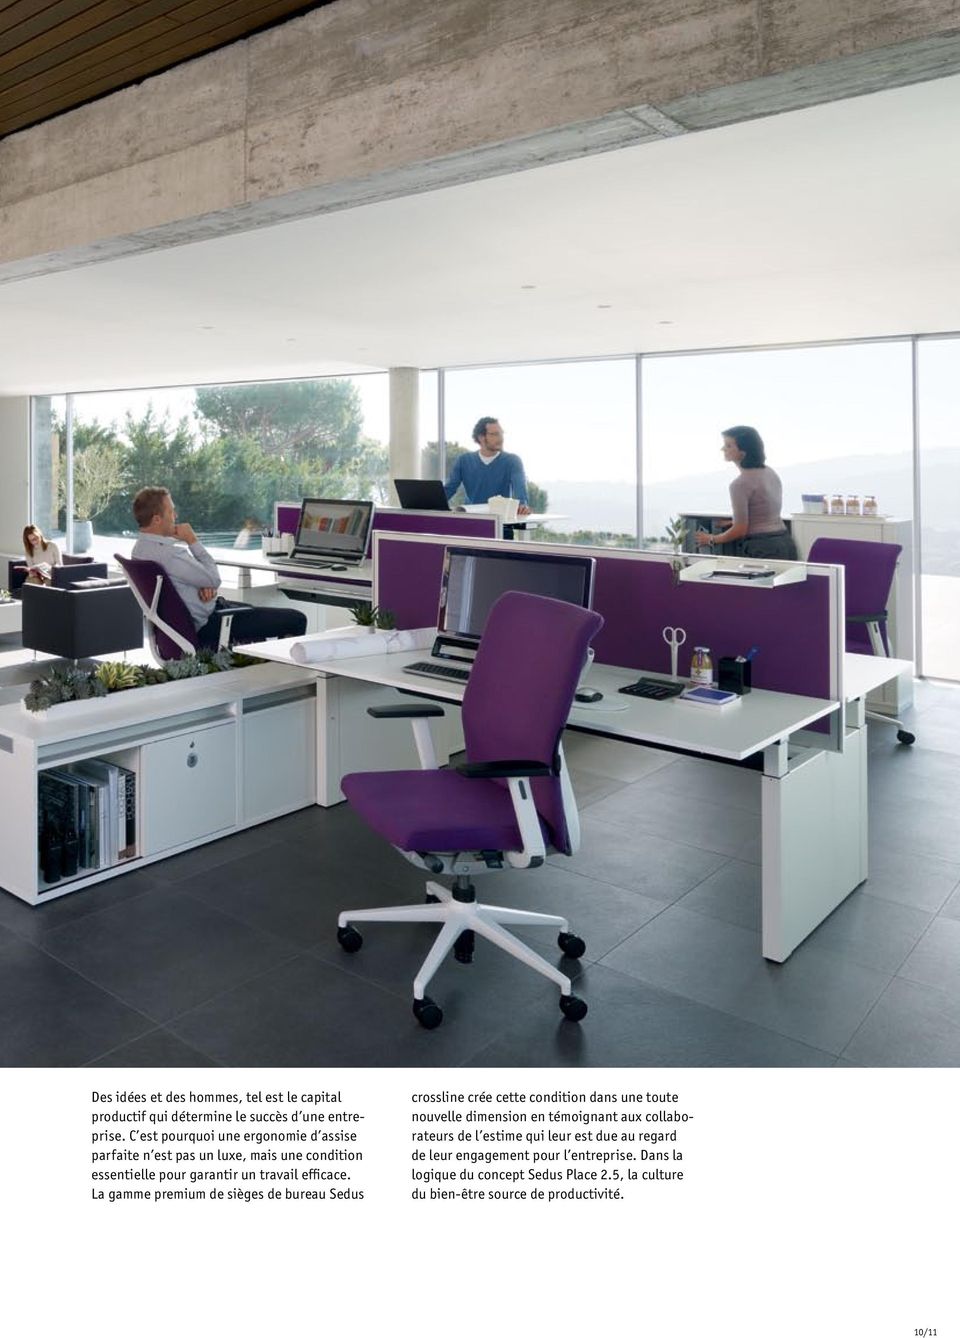 La gamme premium de sièges de bureau Sedus crossline crée cette condition dans une toute nouvelle dimension en témoignant aux